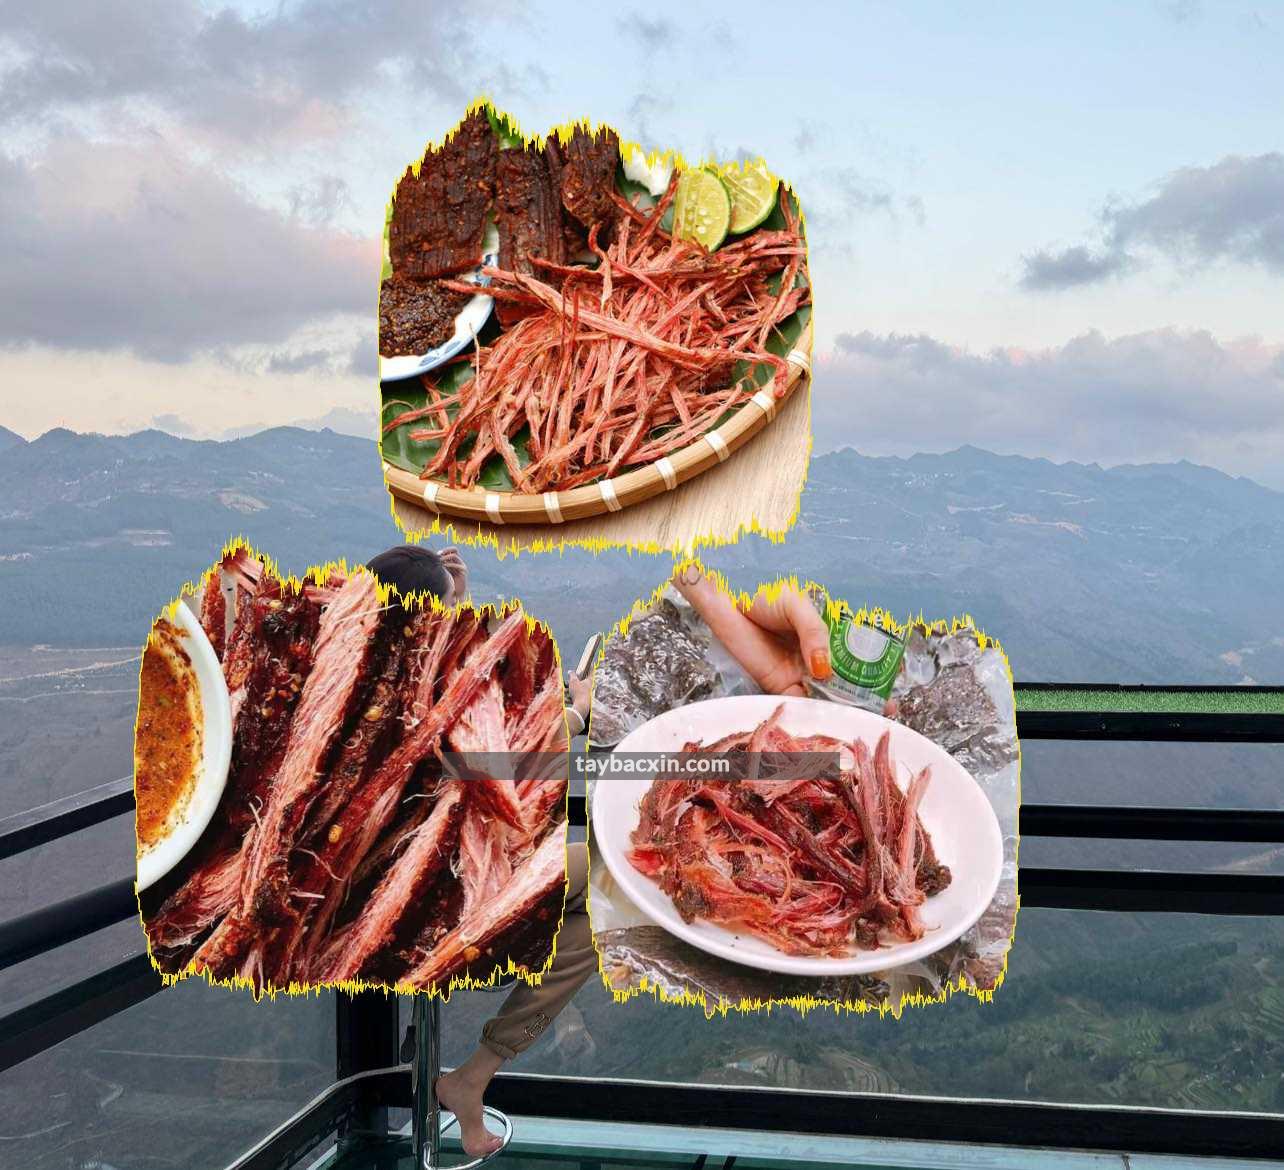 đặc điểm của thịt lợn gác bếp tại Đồ Sơn